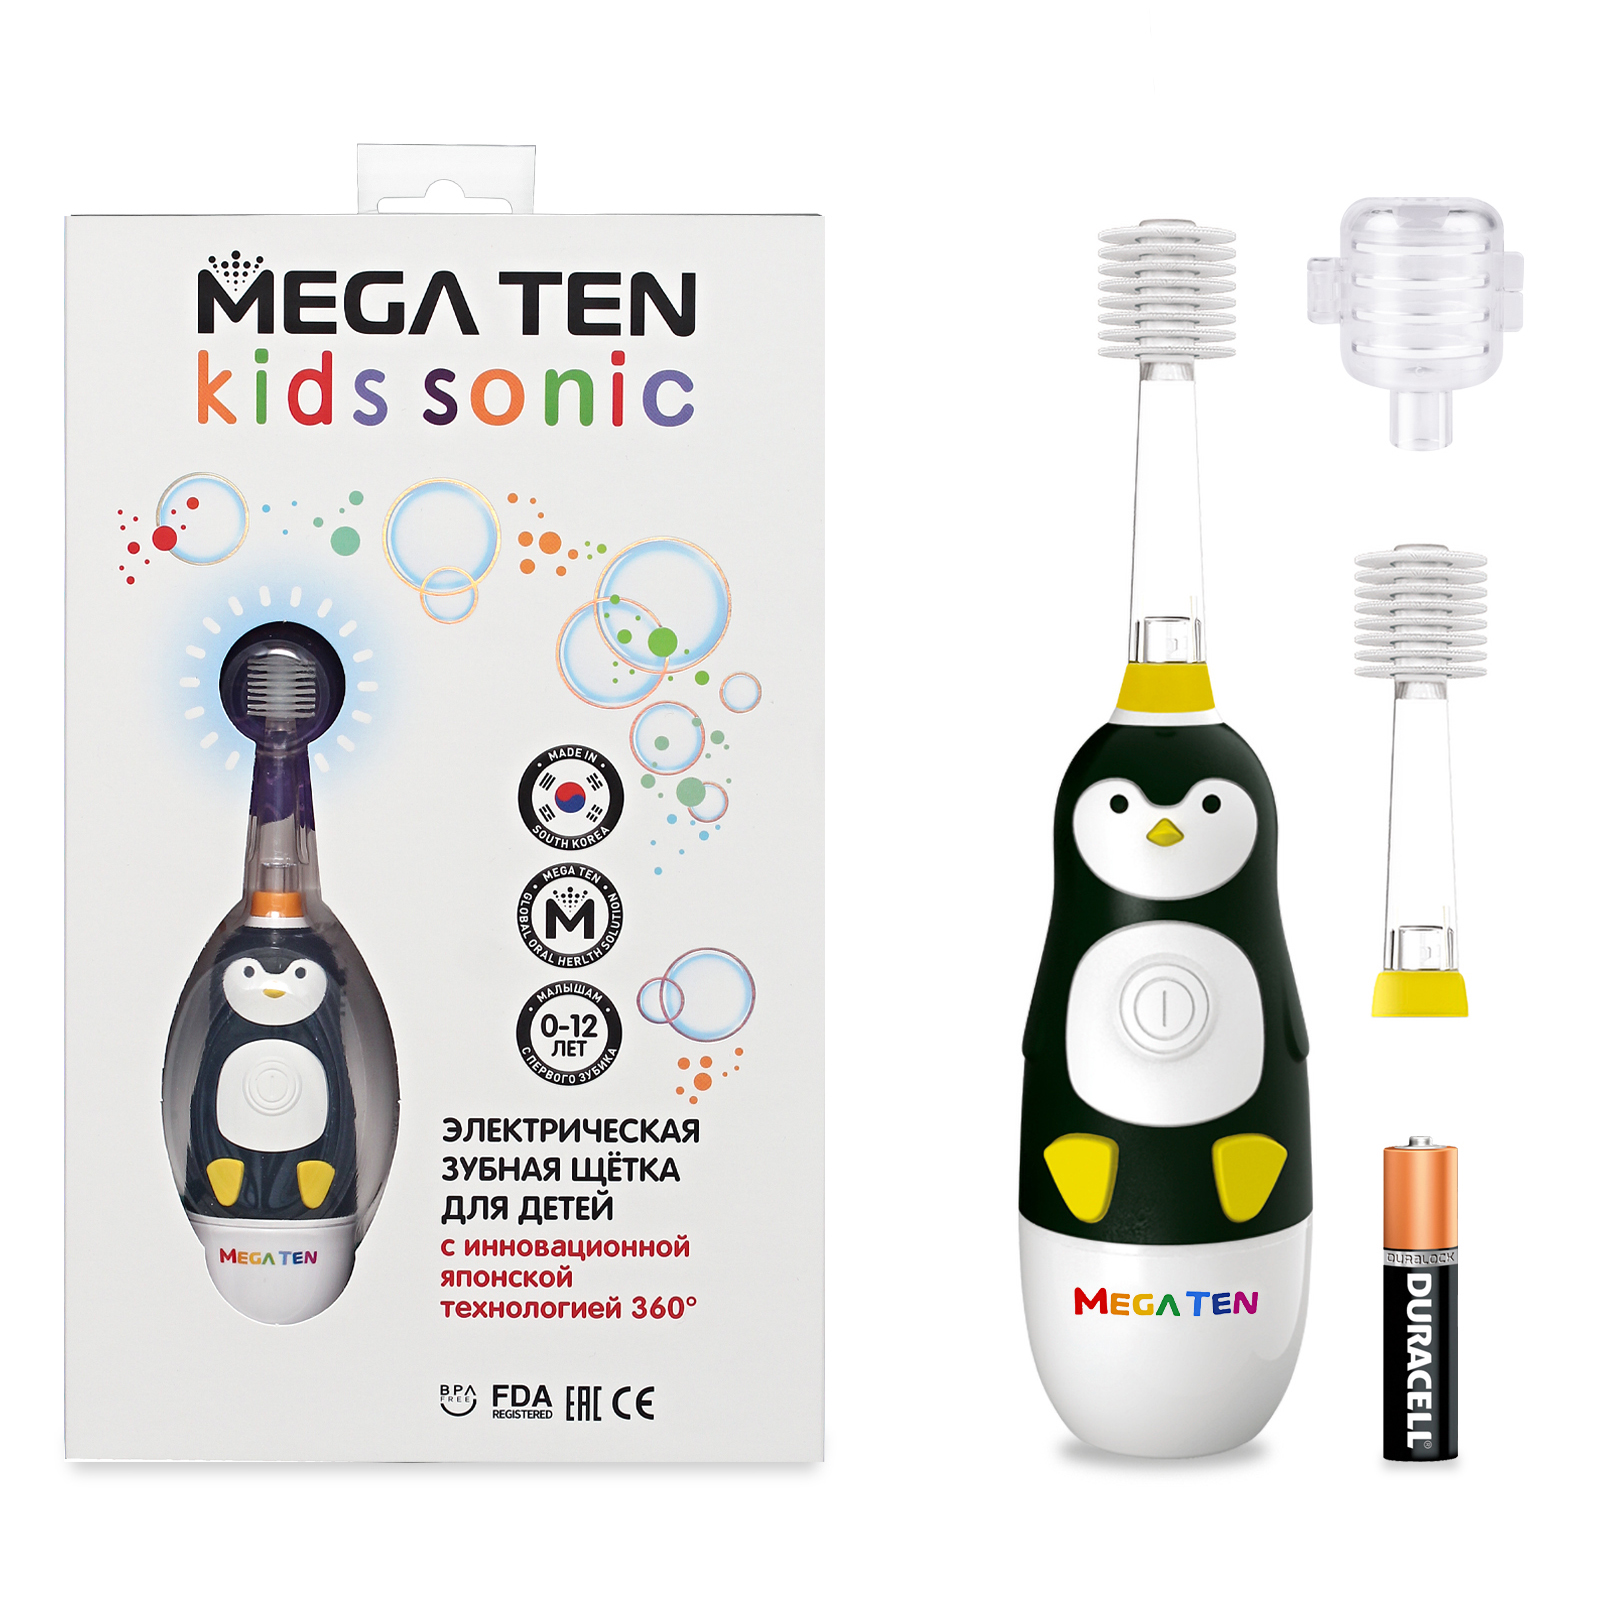 Зубная щетка MEGA TEN Пингвиненок в наборе MEGA TEN KIDS SONIC 111-MKS026 электрическая зубная щетка mega ten kids sonic хомячок